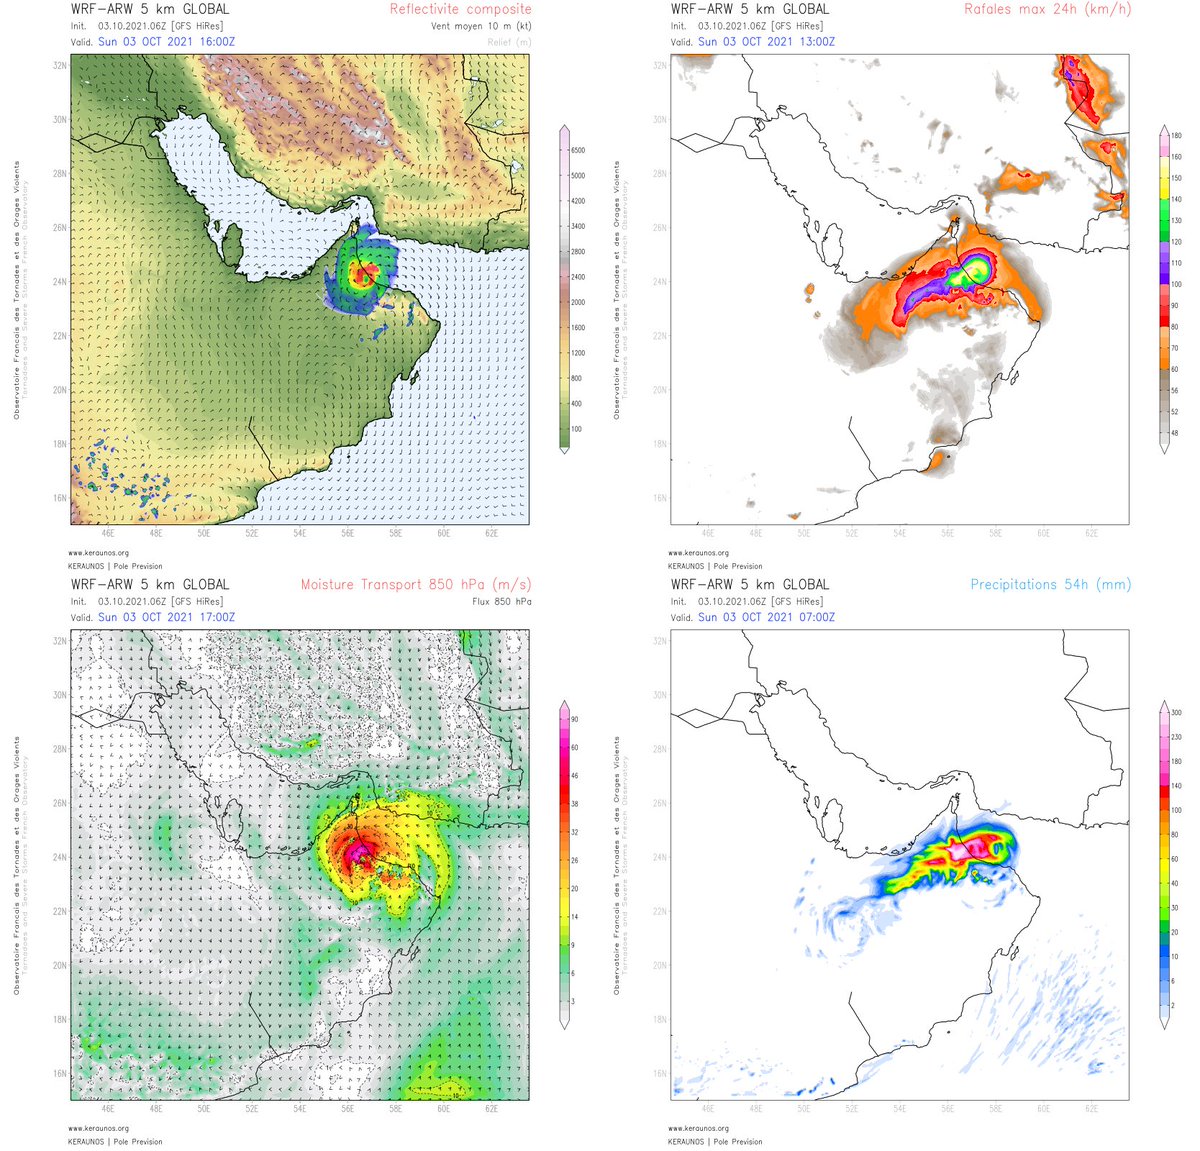 Le cyclone tropical #Shaheen (#Gulab) pourrait déverser + de 300 mm loc. sur les reliefs du nord d'#Oman. ARW 5 km suggère en effet une activité maximale au nord du minimum dépressionnaire, avec rafales > 140 km/h. 